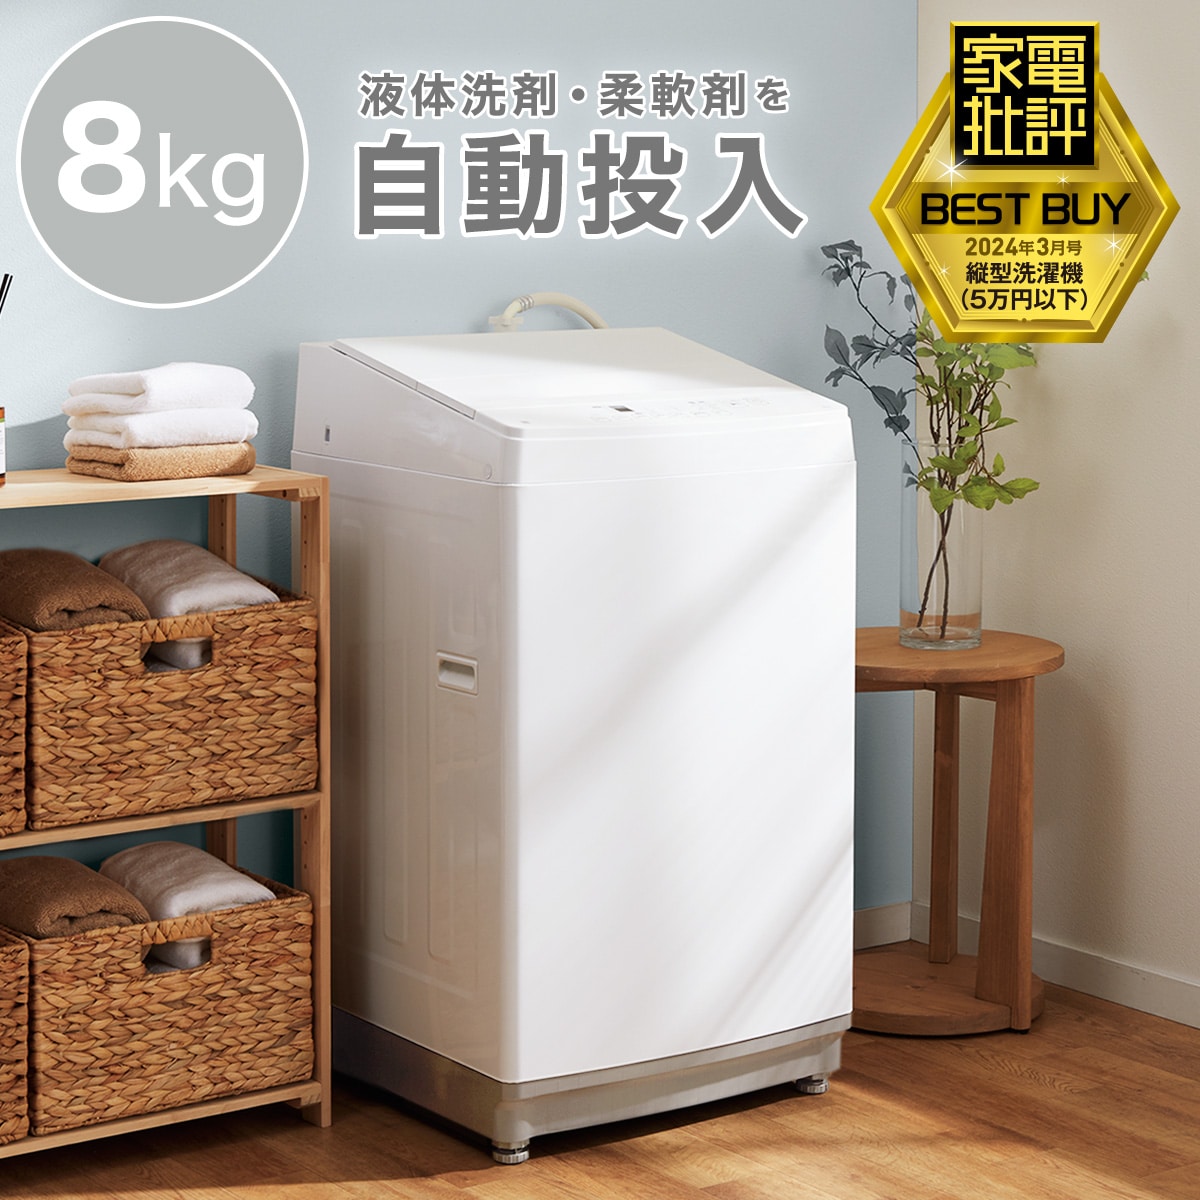 【家電批評ベストバイ受賞】8kg洗剤自動投入洗濯機(NT80J1 ホワイト)